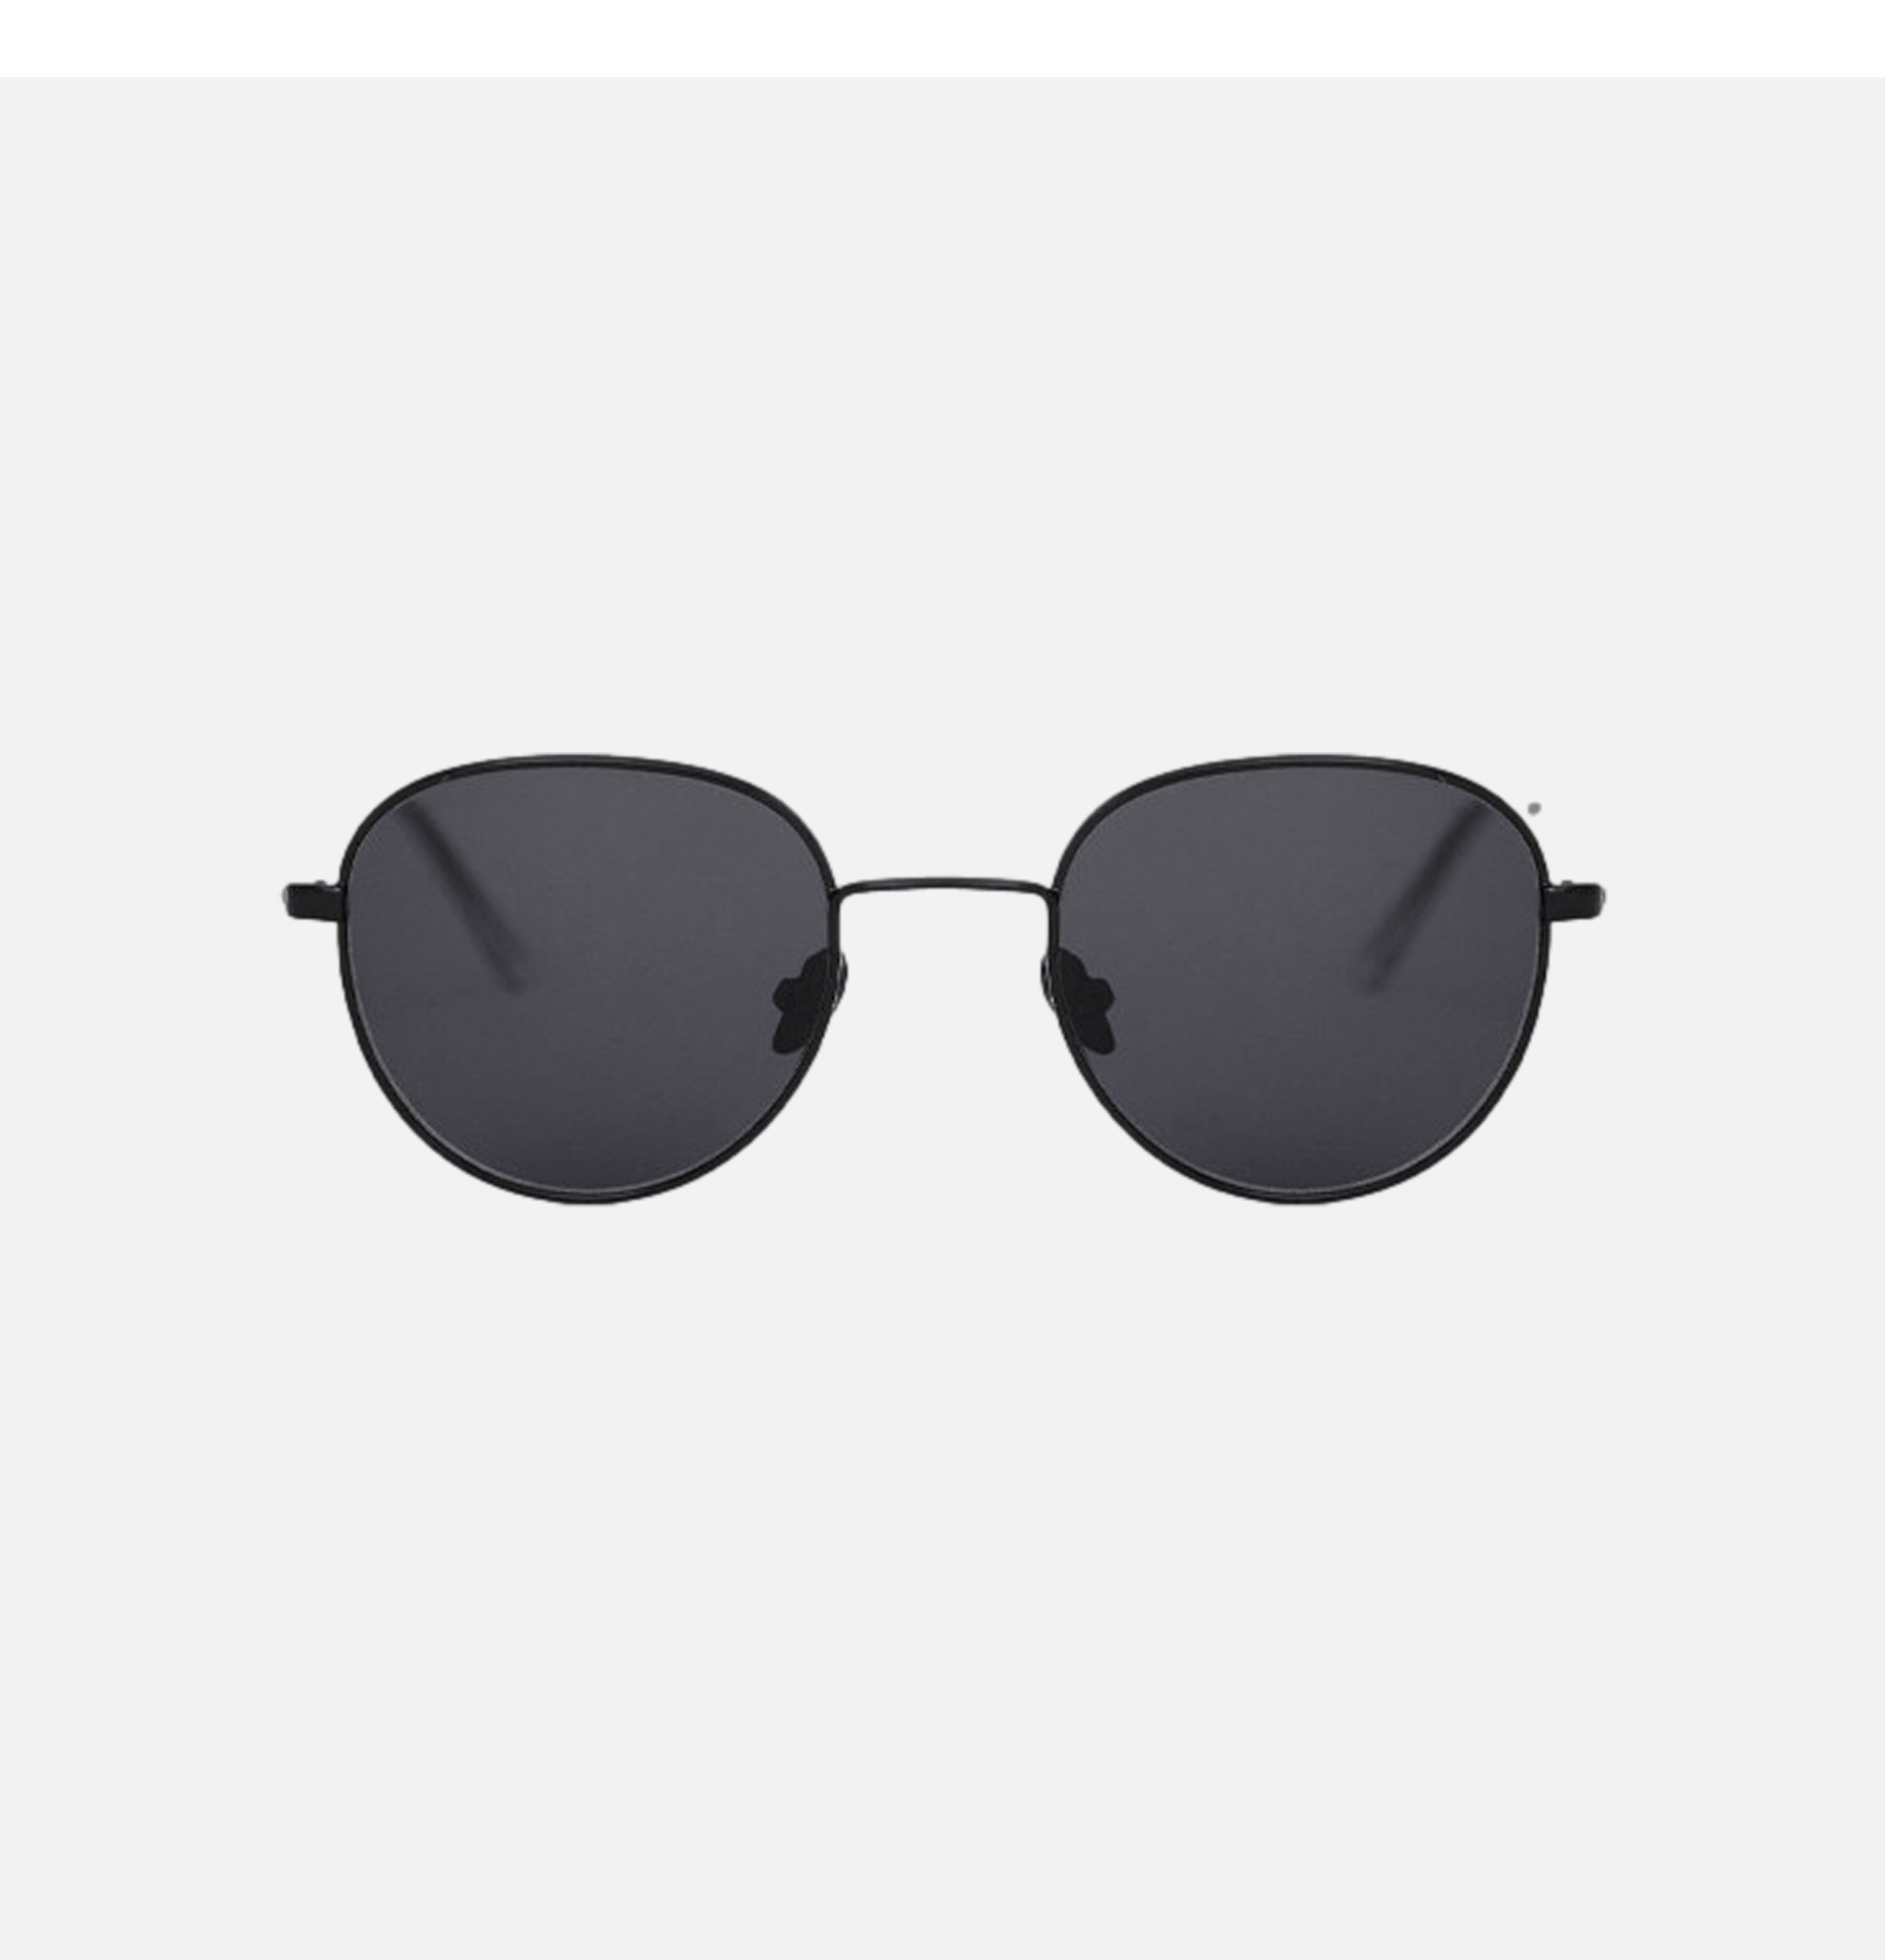 Rio Sunglasses Black -...